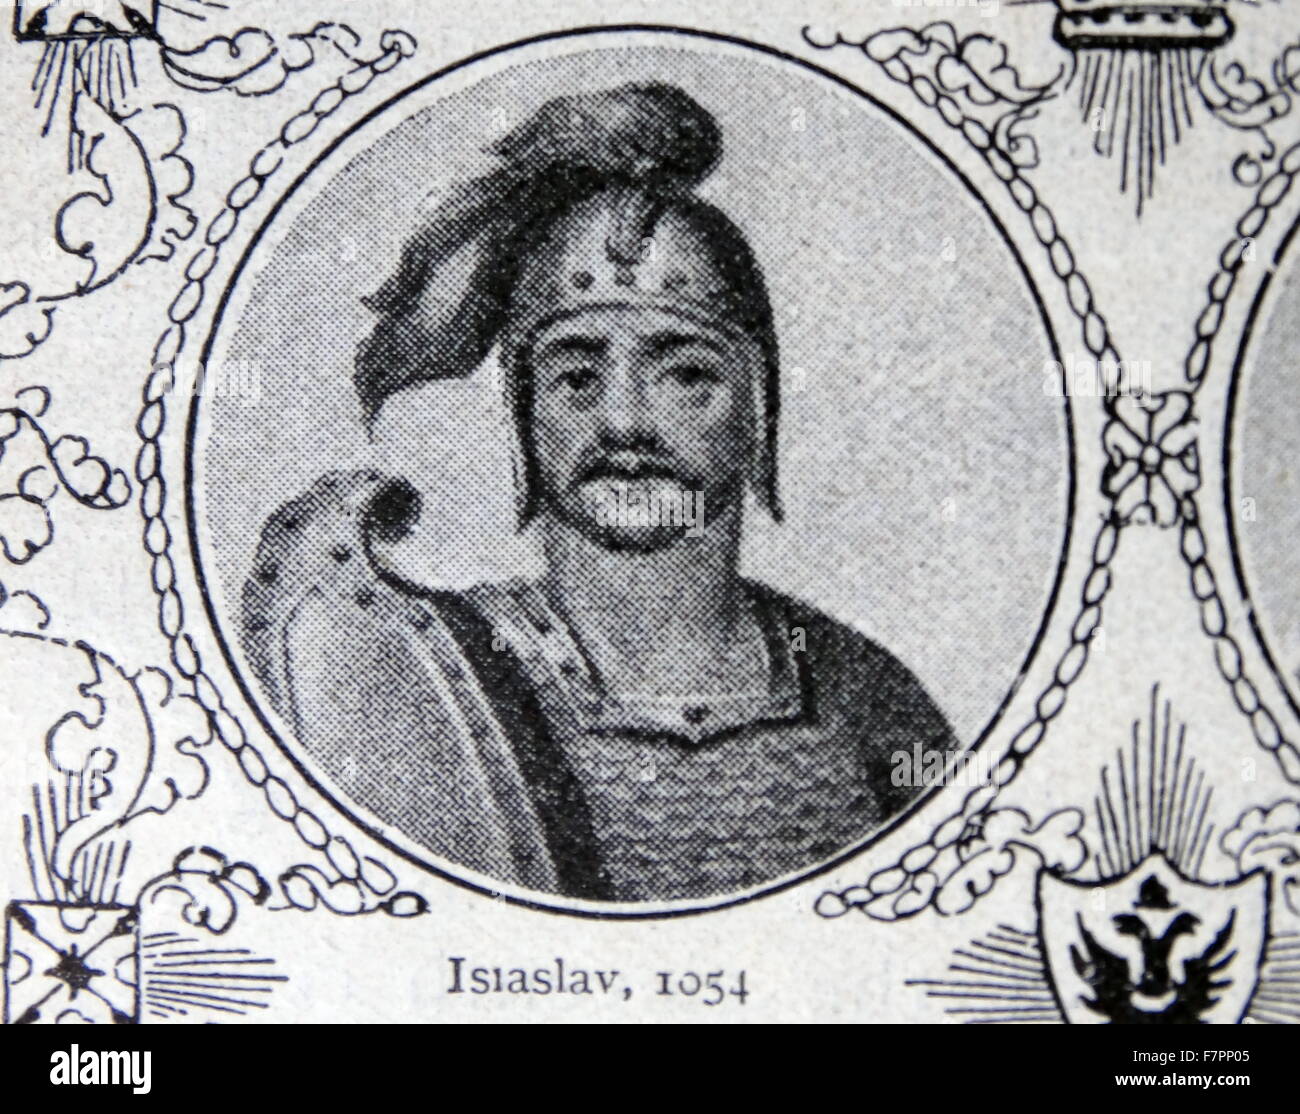 Iziaslav Jaroslawitsch (1024 – 1078, Demetrius) Kniaz "(Prinz) von Turov, Veliki Kniaz (Großfürst) von Kiew (von 1054). Stockfoto